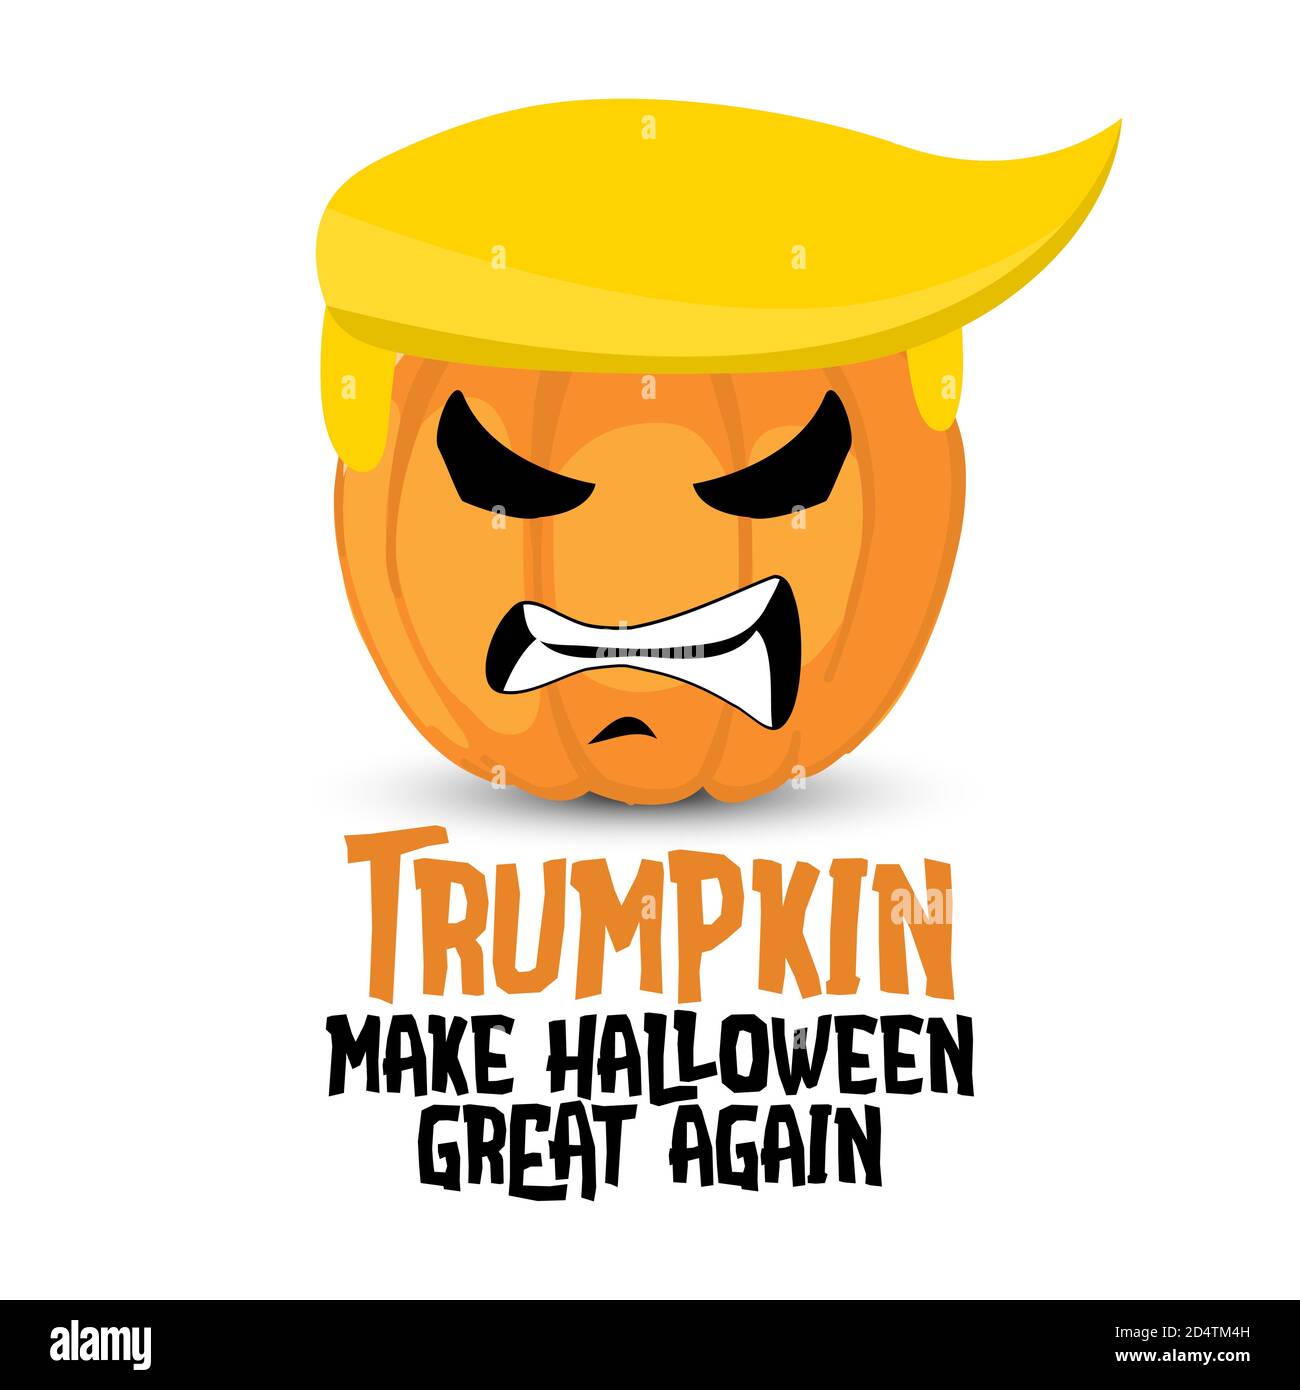 Trump macht Halloween wieder groß - lustige Vektor-Kürbis-Illustration mit Trump-Haaren und wütendes Gesicht. Handgezeichneter Schriftzug Zitat für 2020 Halloween und Stock Vektor